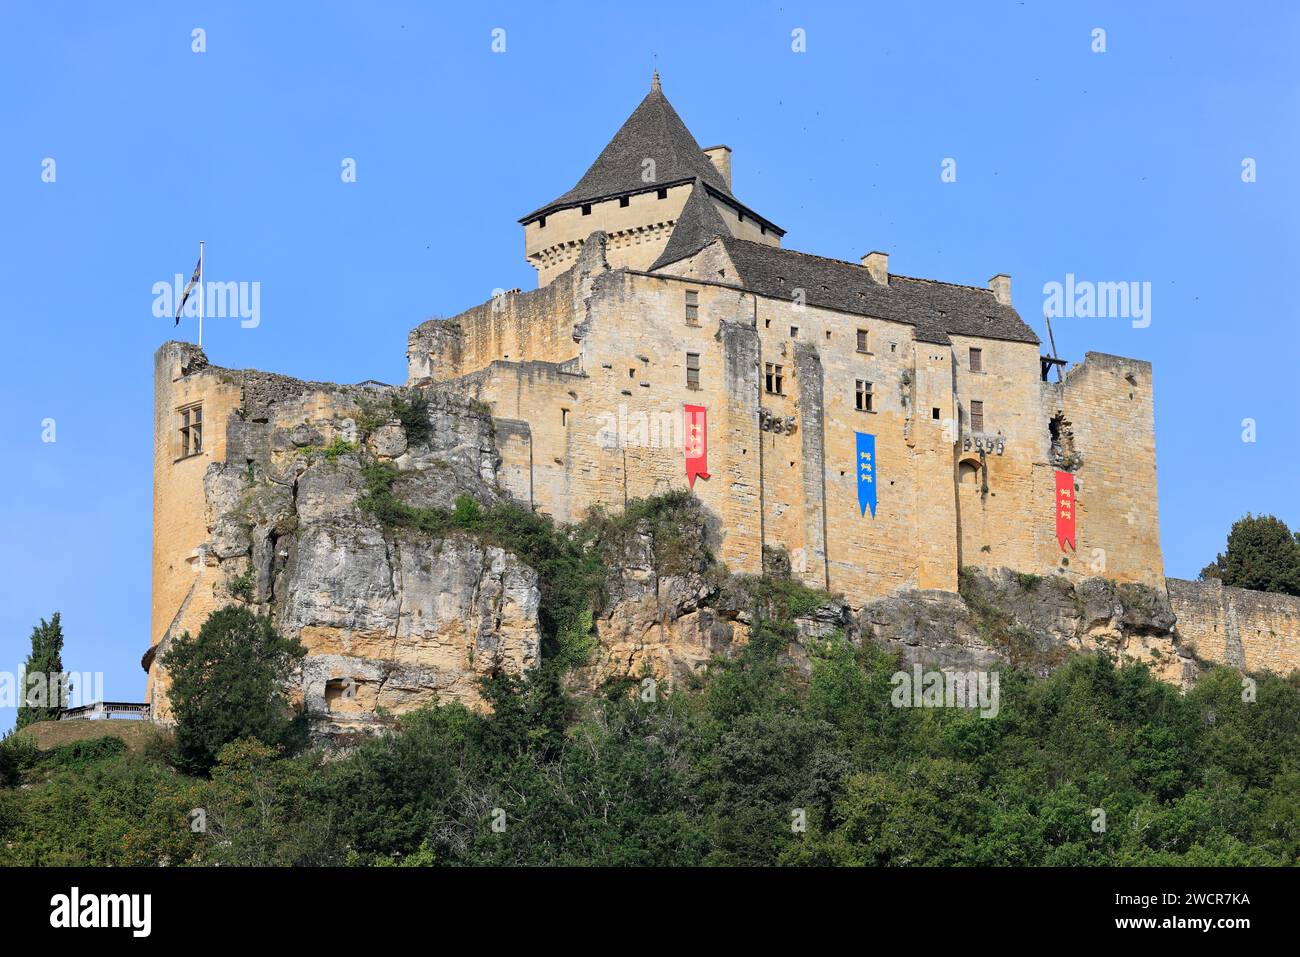 La fortezza medievale di Château de Castelnaud (XIII-XIV secolo) nel Périgord Noir ospita il museo della guerra nel Medioevo. Storia, architettura, Foto Stock